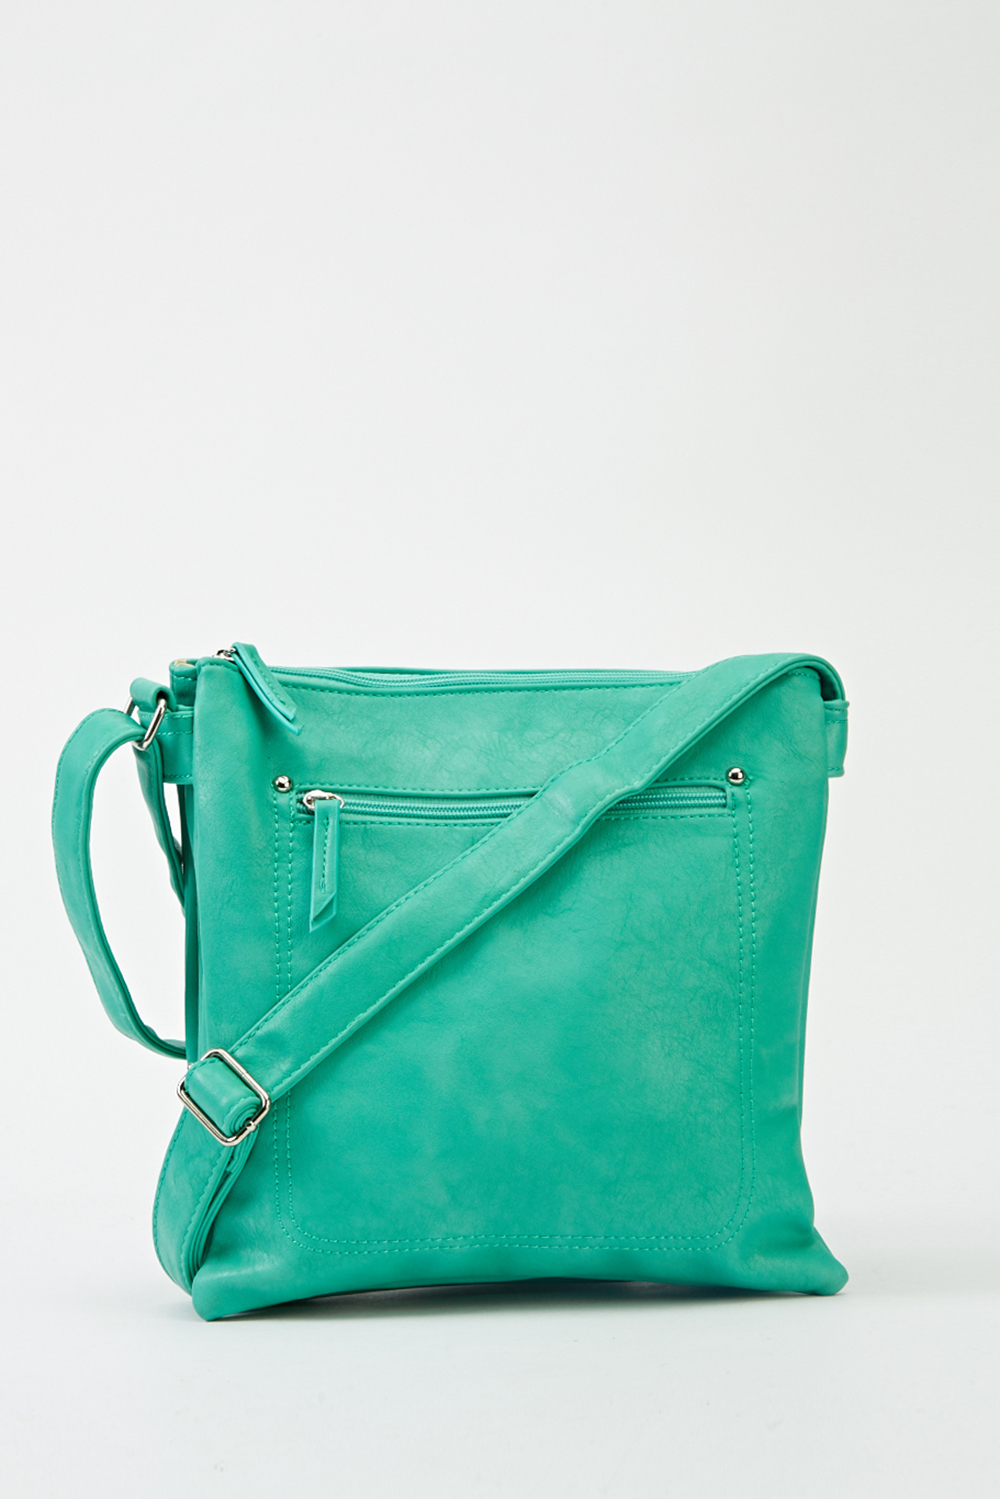 Pocket Front Green Crossbody Bag - Just $7